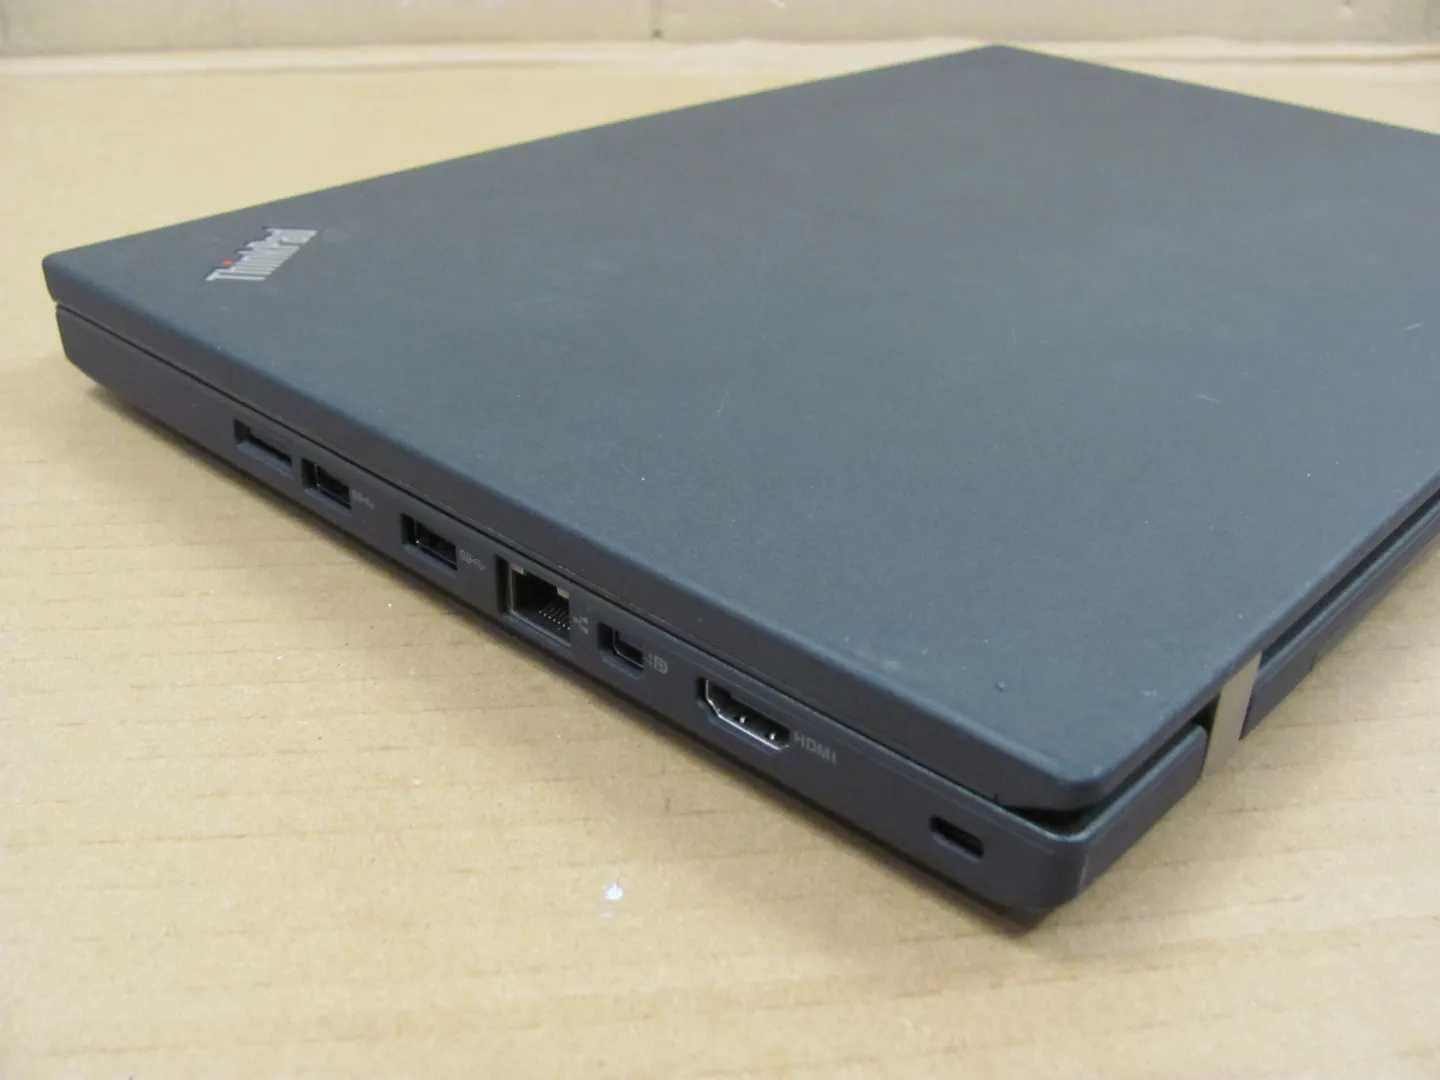 Lenovo ThinkPad T460p FHD i5 6440HQ 2,6Ghz 8Gb 240ssd WebCam LedKey бж